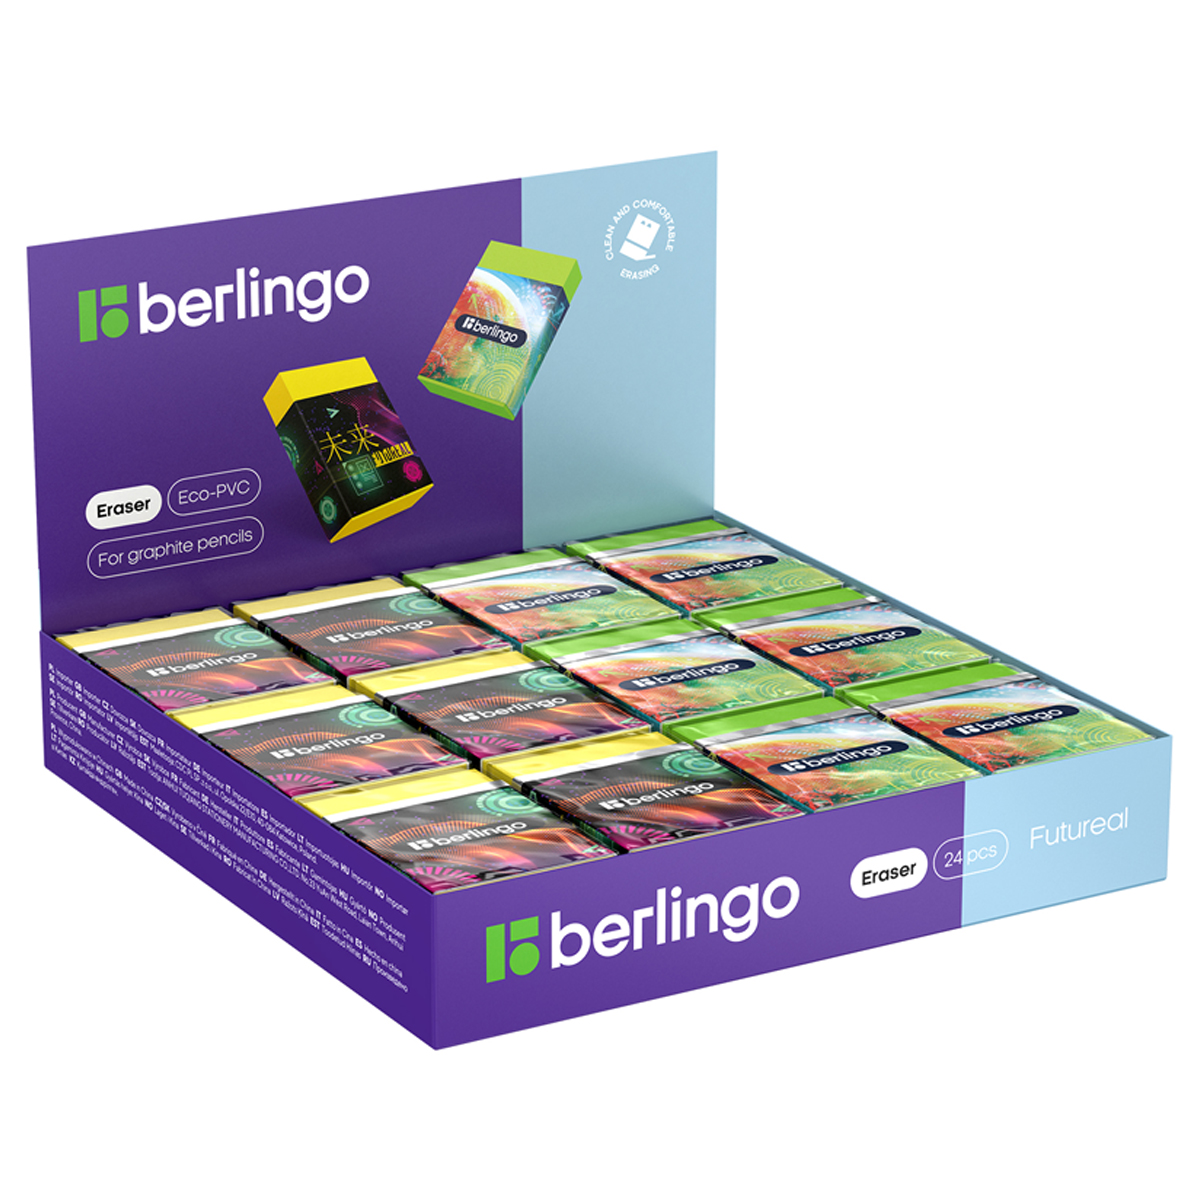 Ластик Berlingo Futureal, Eco-PVC, картонный держатель, 45*32*11мм (Вид 1)